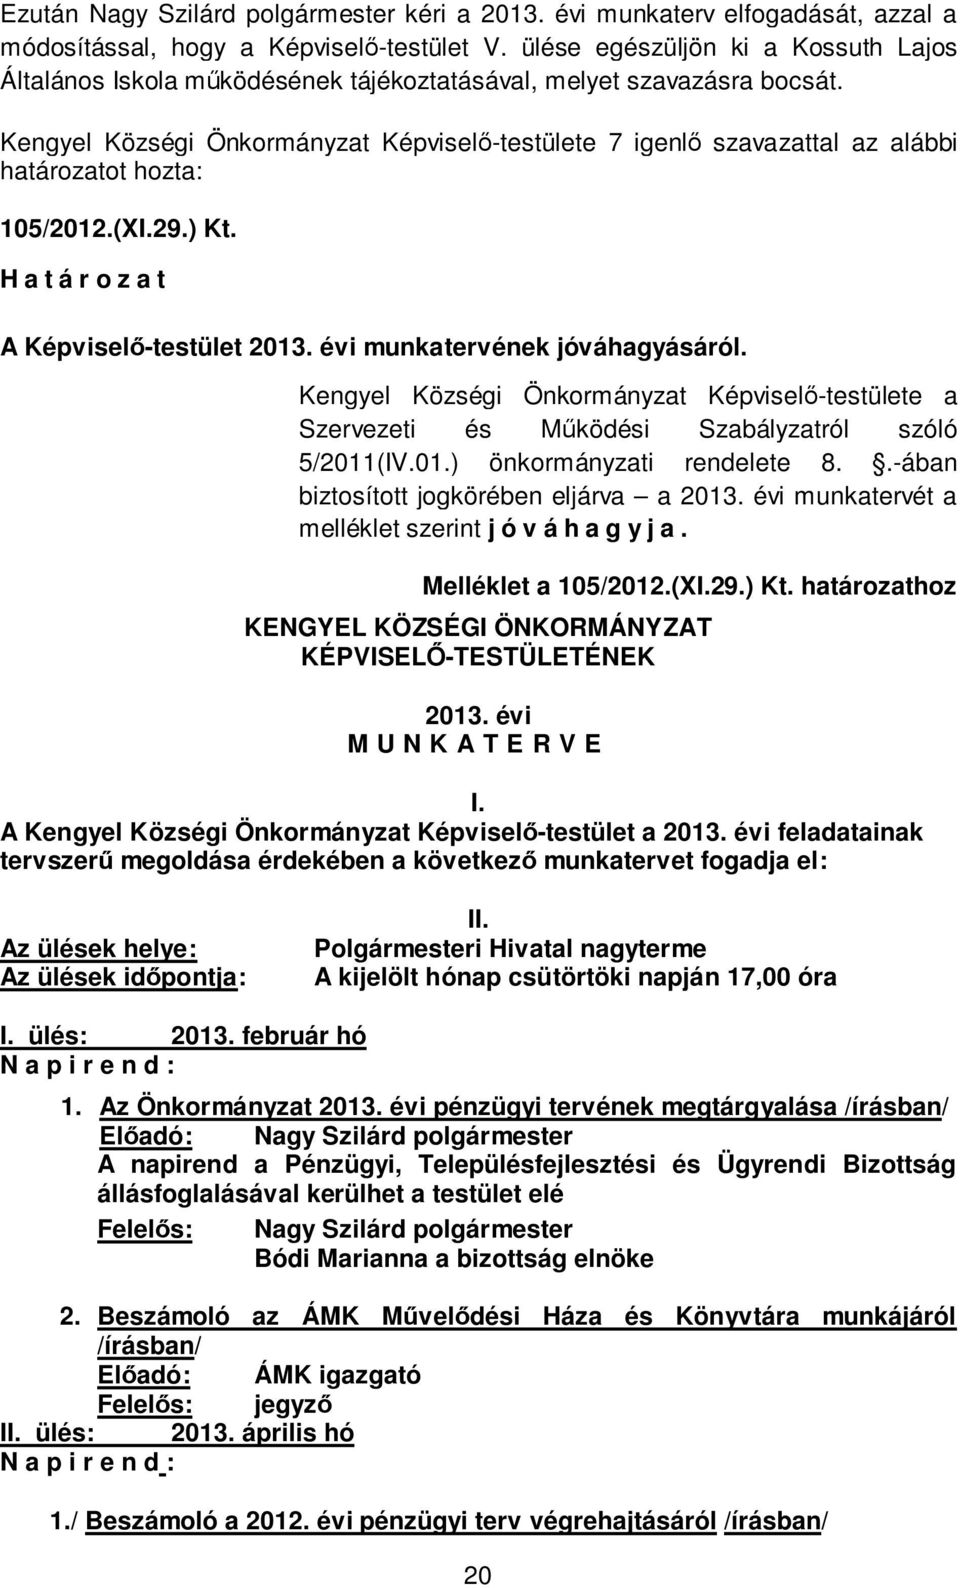 Kengyel Községi Önkormányzat Képviselő-testülete 7 igenlő szavazattal az alábbi határozatot hozta: 105/2012.(XI.29.) Kt. H a t á r o z a t A Képviselő-testület 2013. évi munkatervének jóváhagyásáról.